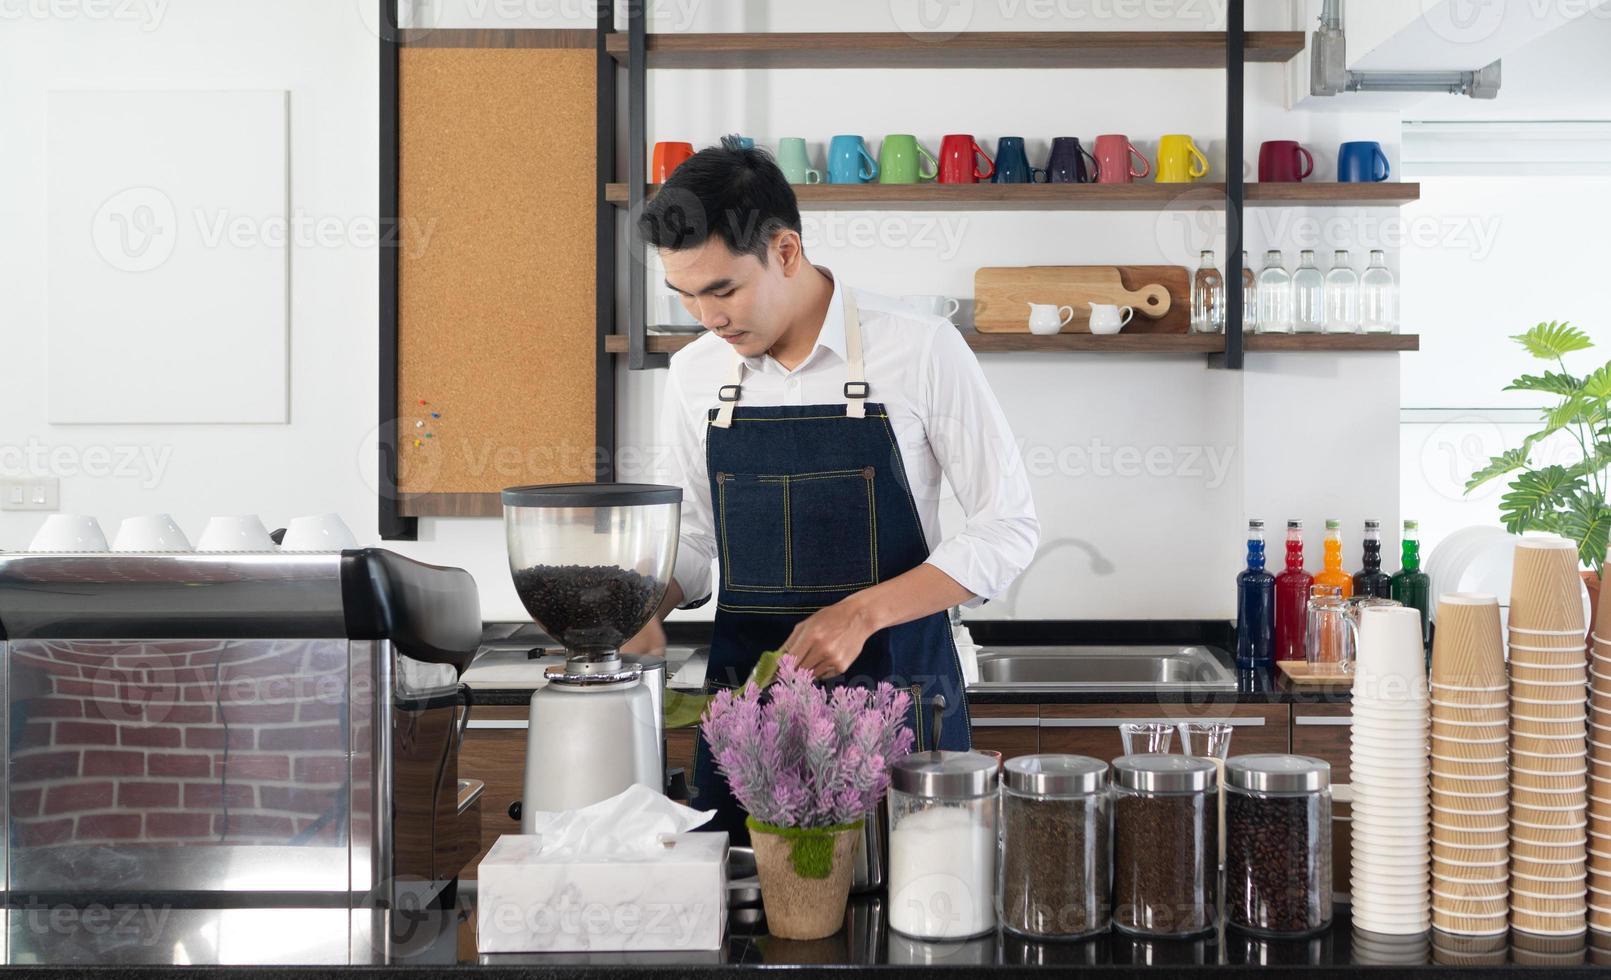 giovane barista asiatico che usa la caffettiera per preparare l'espresso nella caffetteria foto